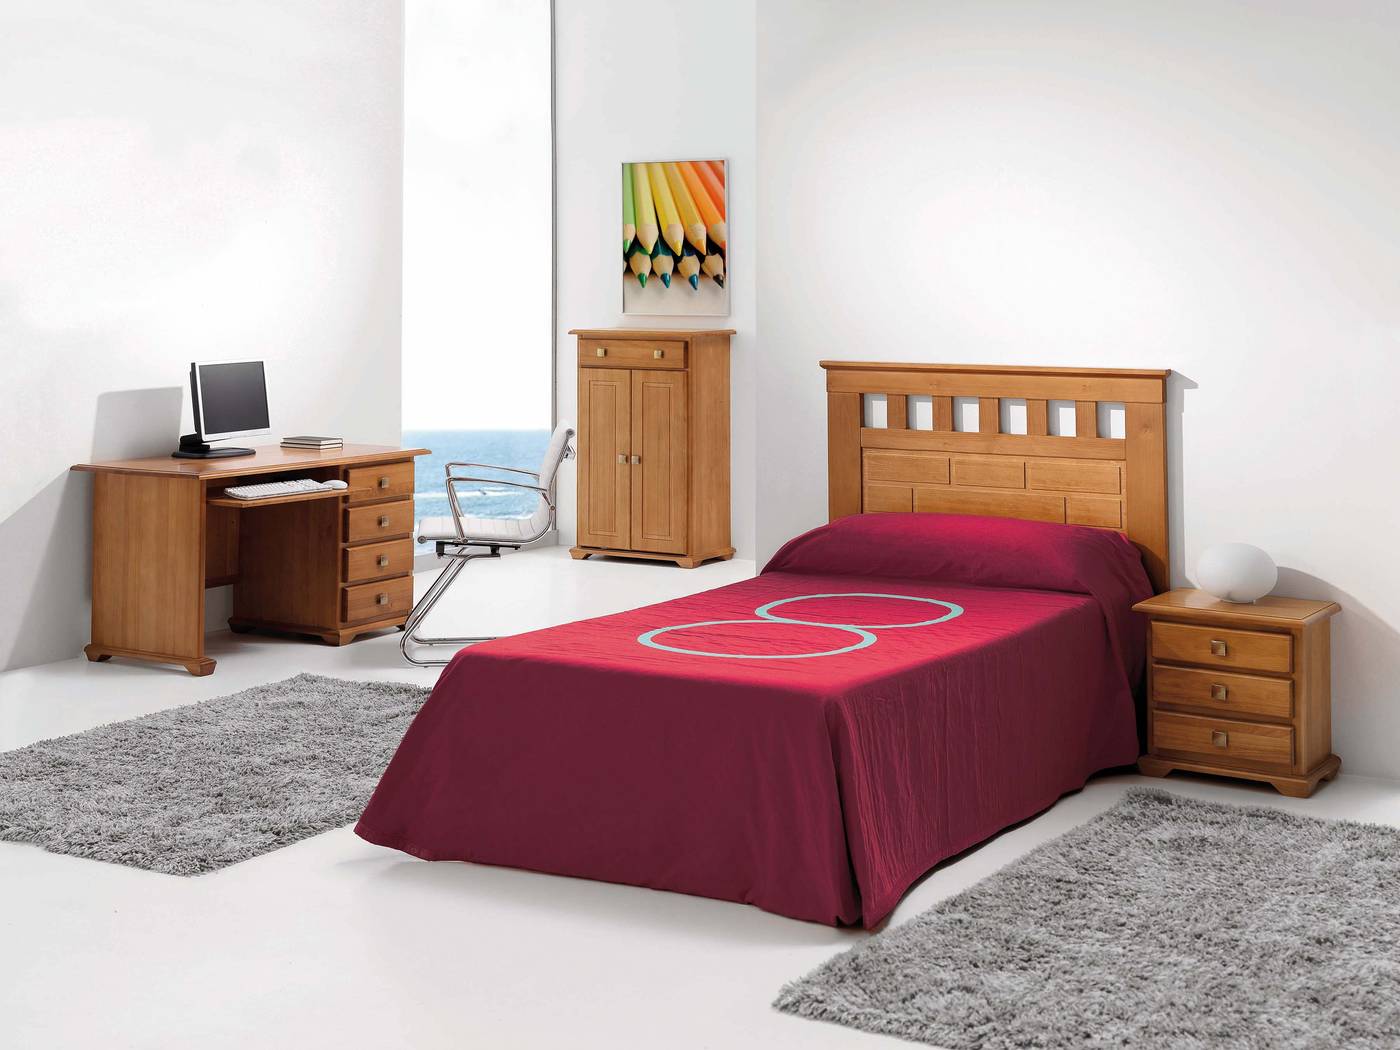 Cabezal Maya Barras - Cabezal para cama disponible en varias medidas y colores distintos